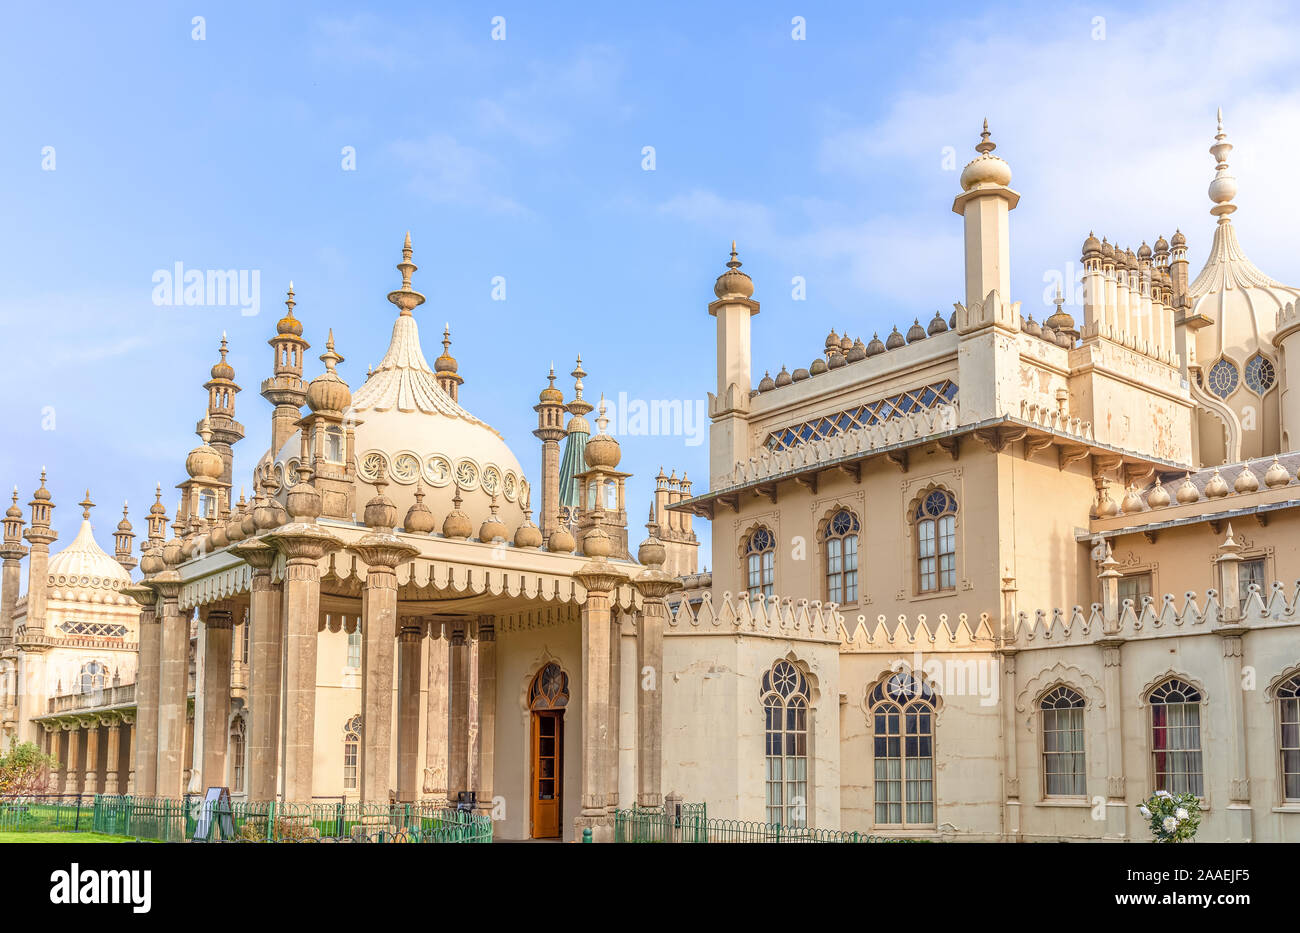 L'aspect arrière de la célèbre Royal Pavilion à Brighton. L'architecture de style indien sous un ciel bleu avec des nuages. Banque D'Images